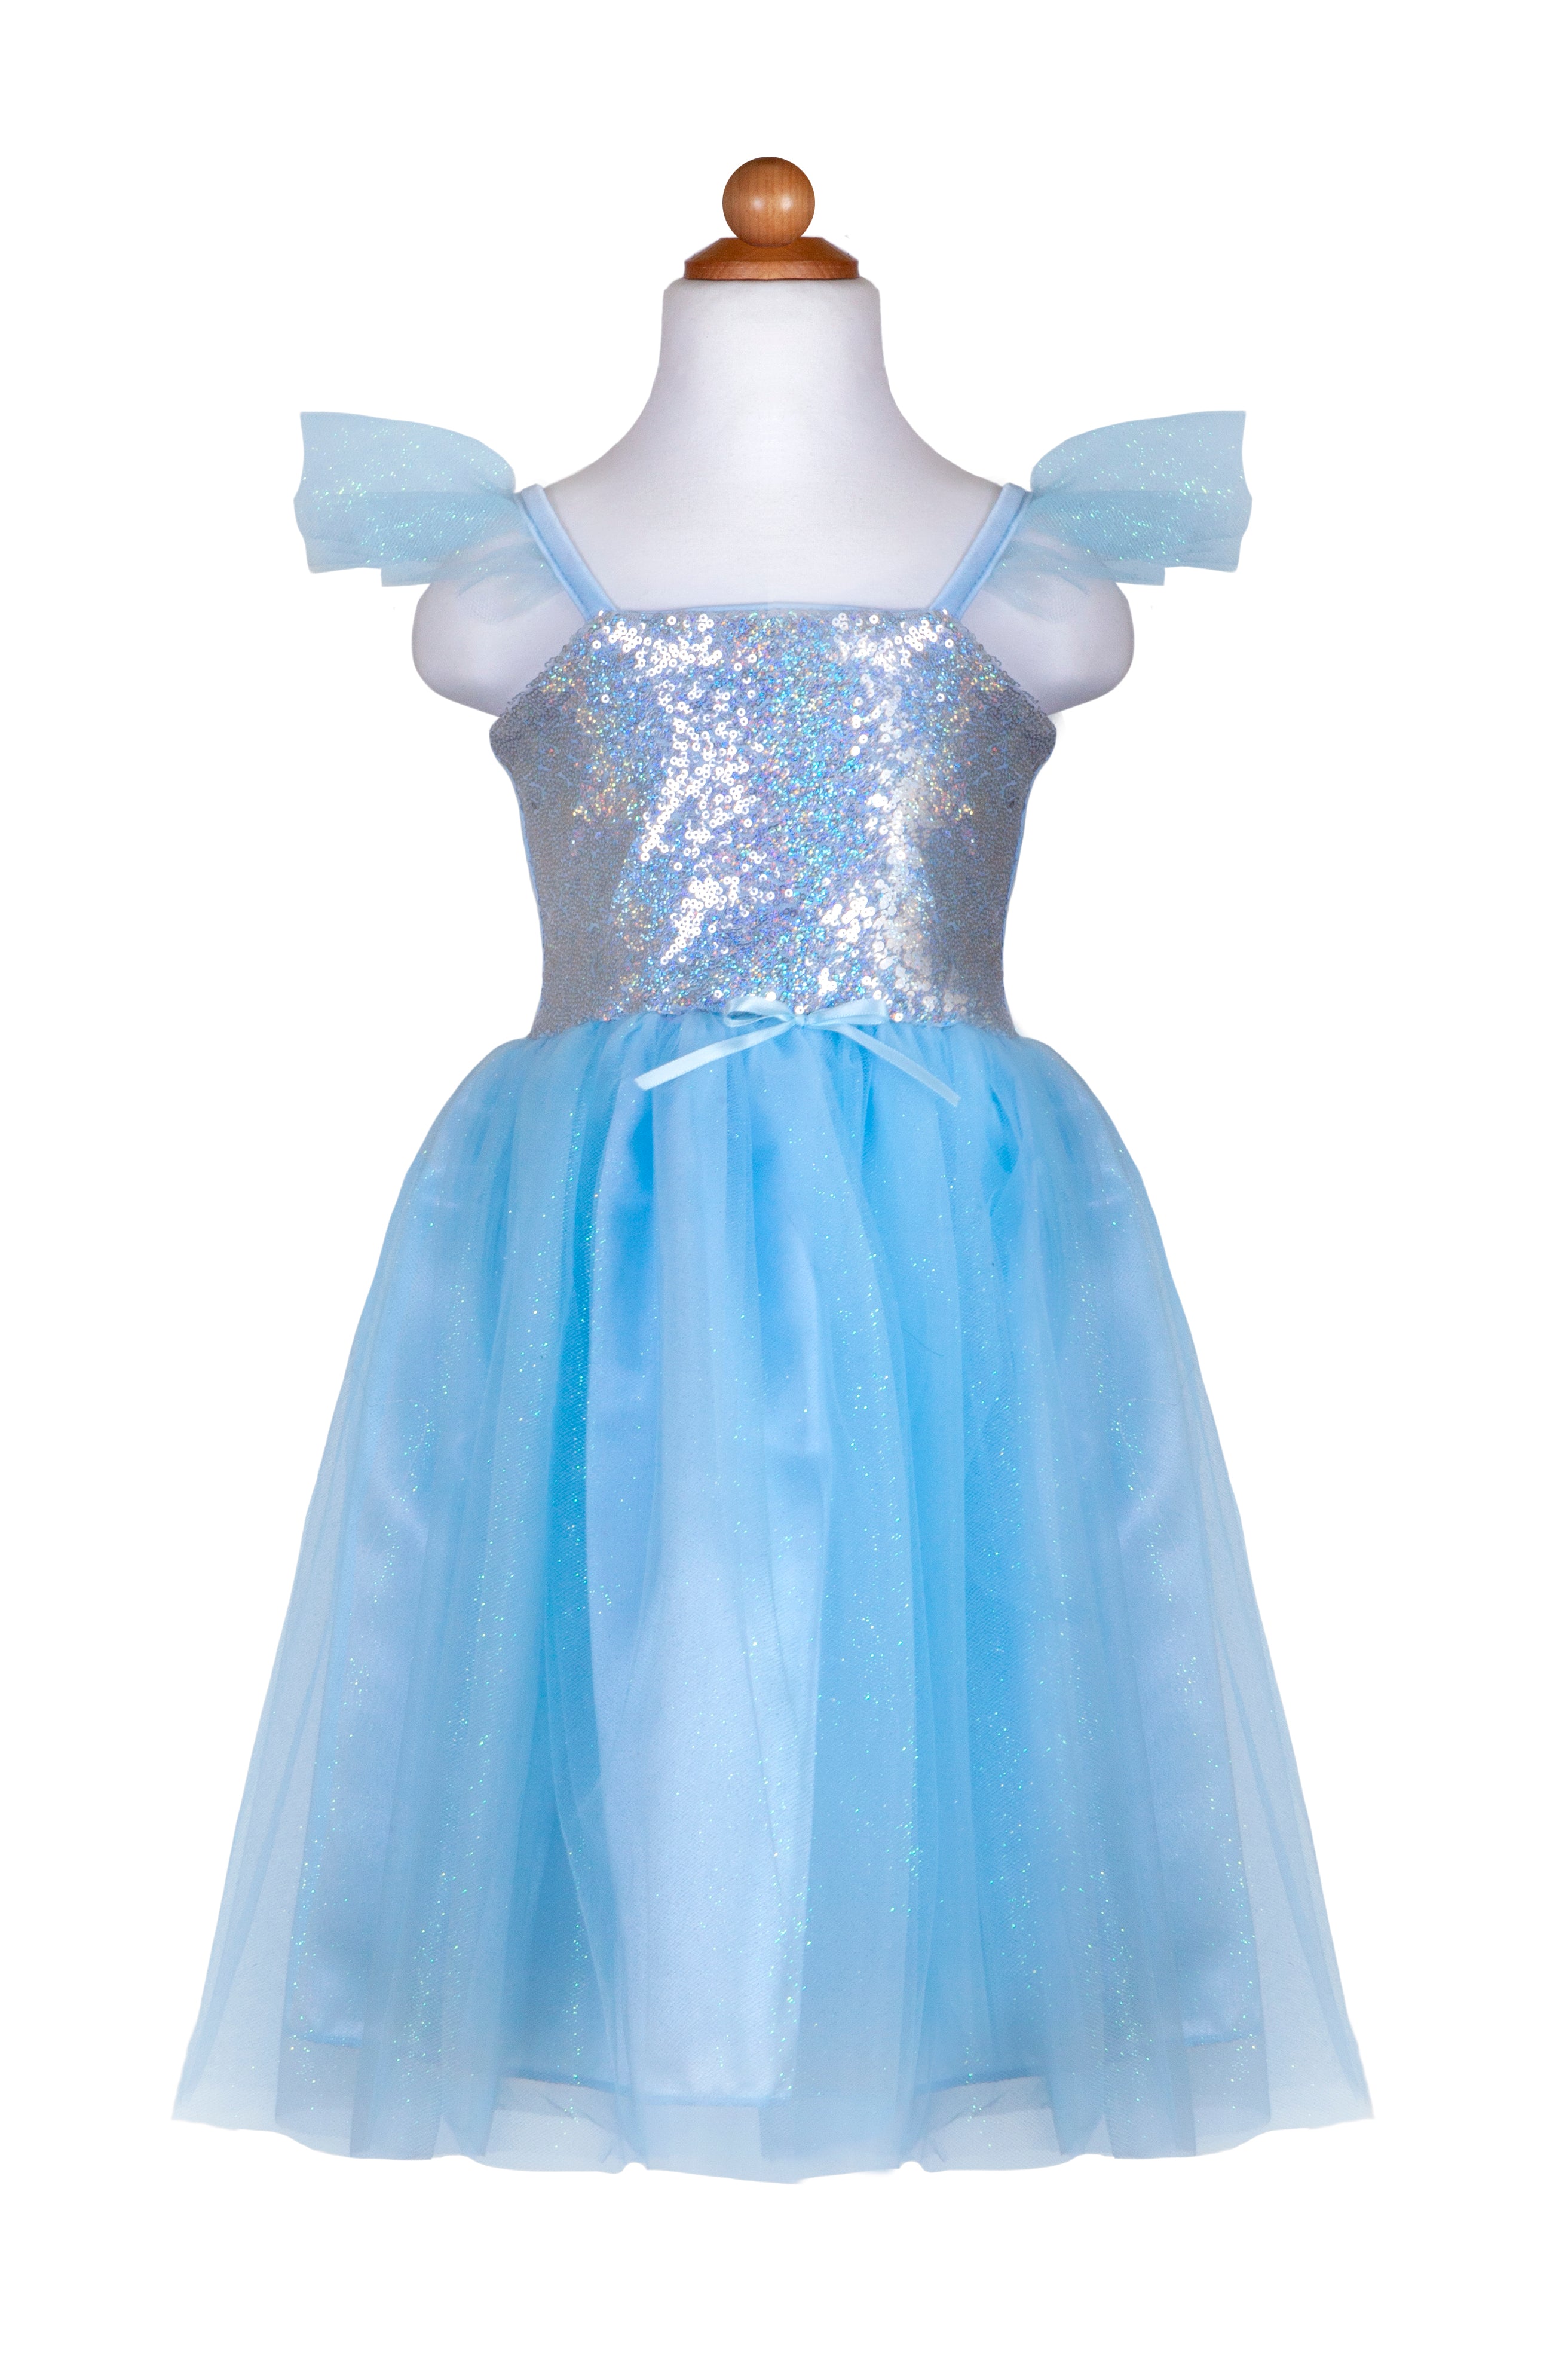 32383-Sequins Princess Dress, Blue, SIZE US 3-4